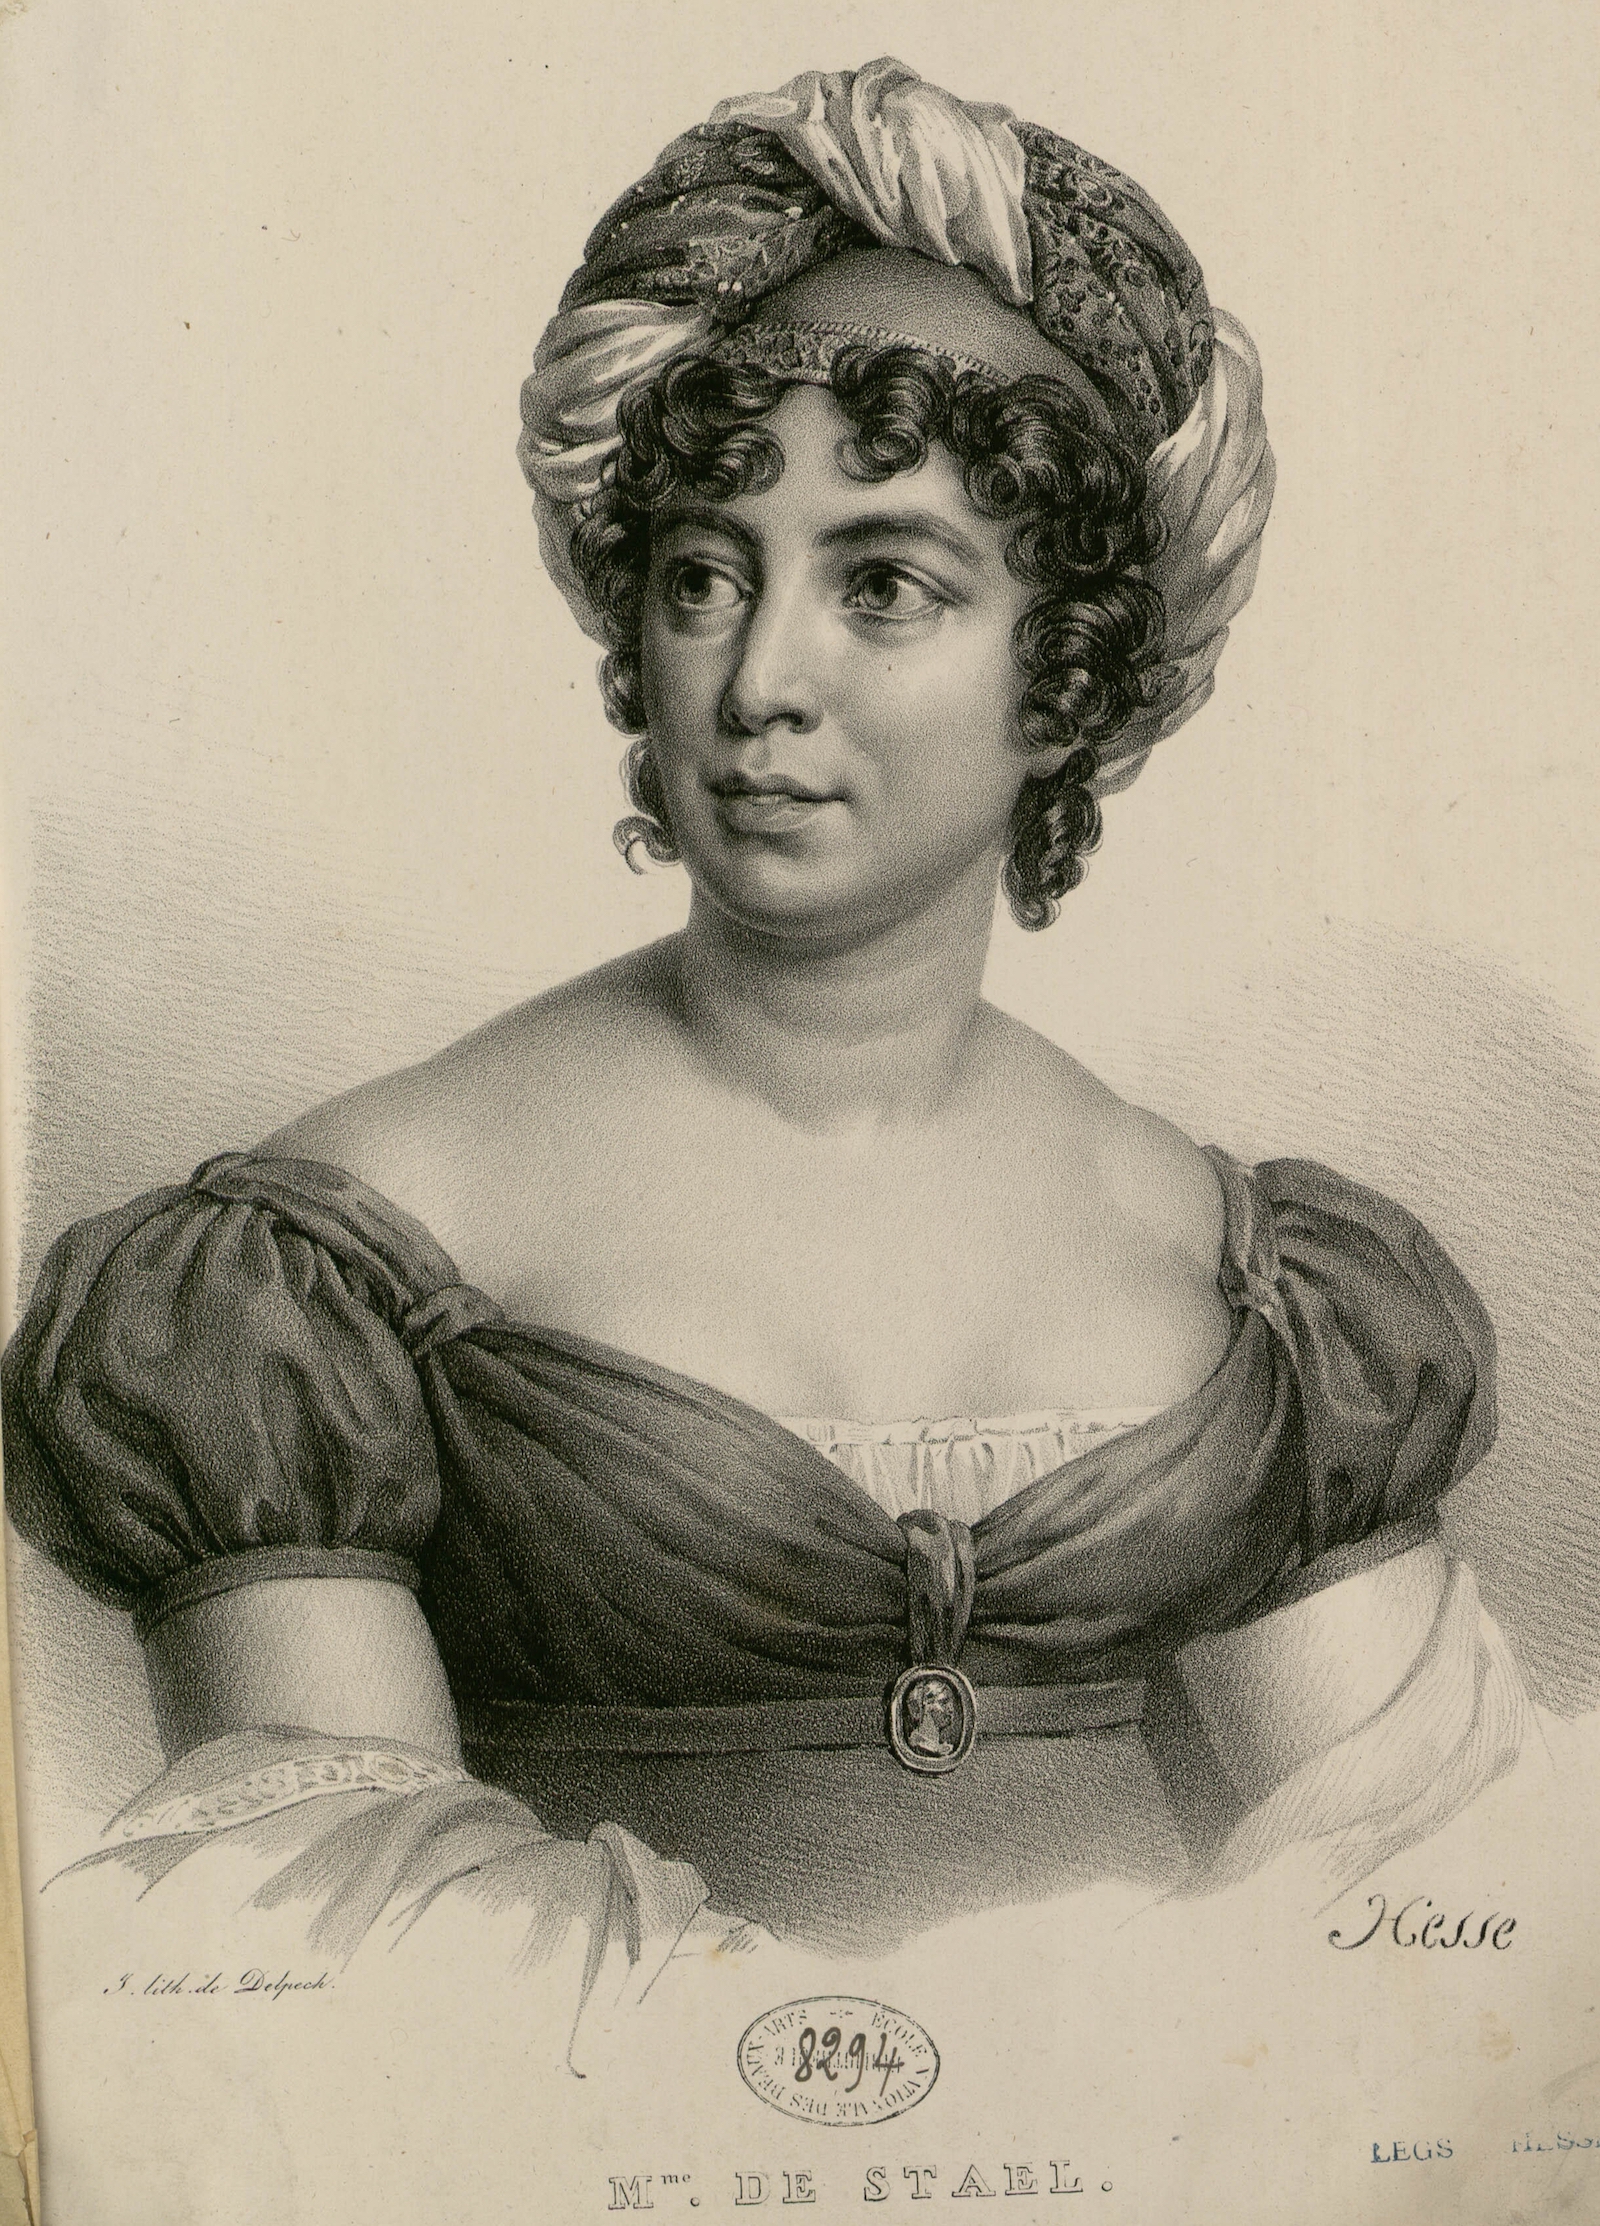 Madame de Staël-Holstein by by Henri-Joseph Hesse, 19th century. Institut National d'Histoire de l'Art. Public Domain.